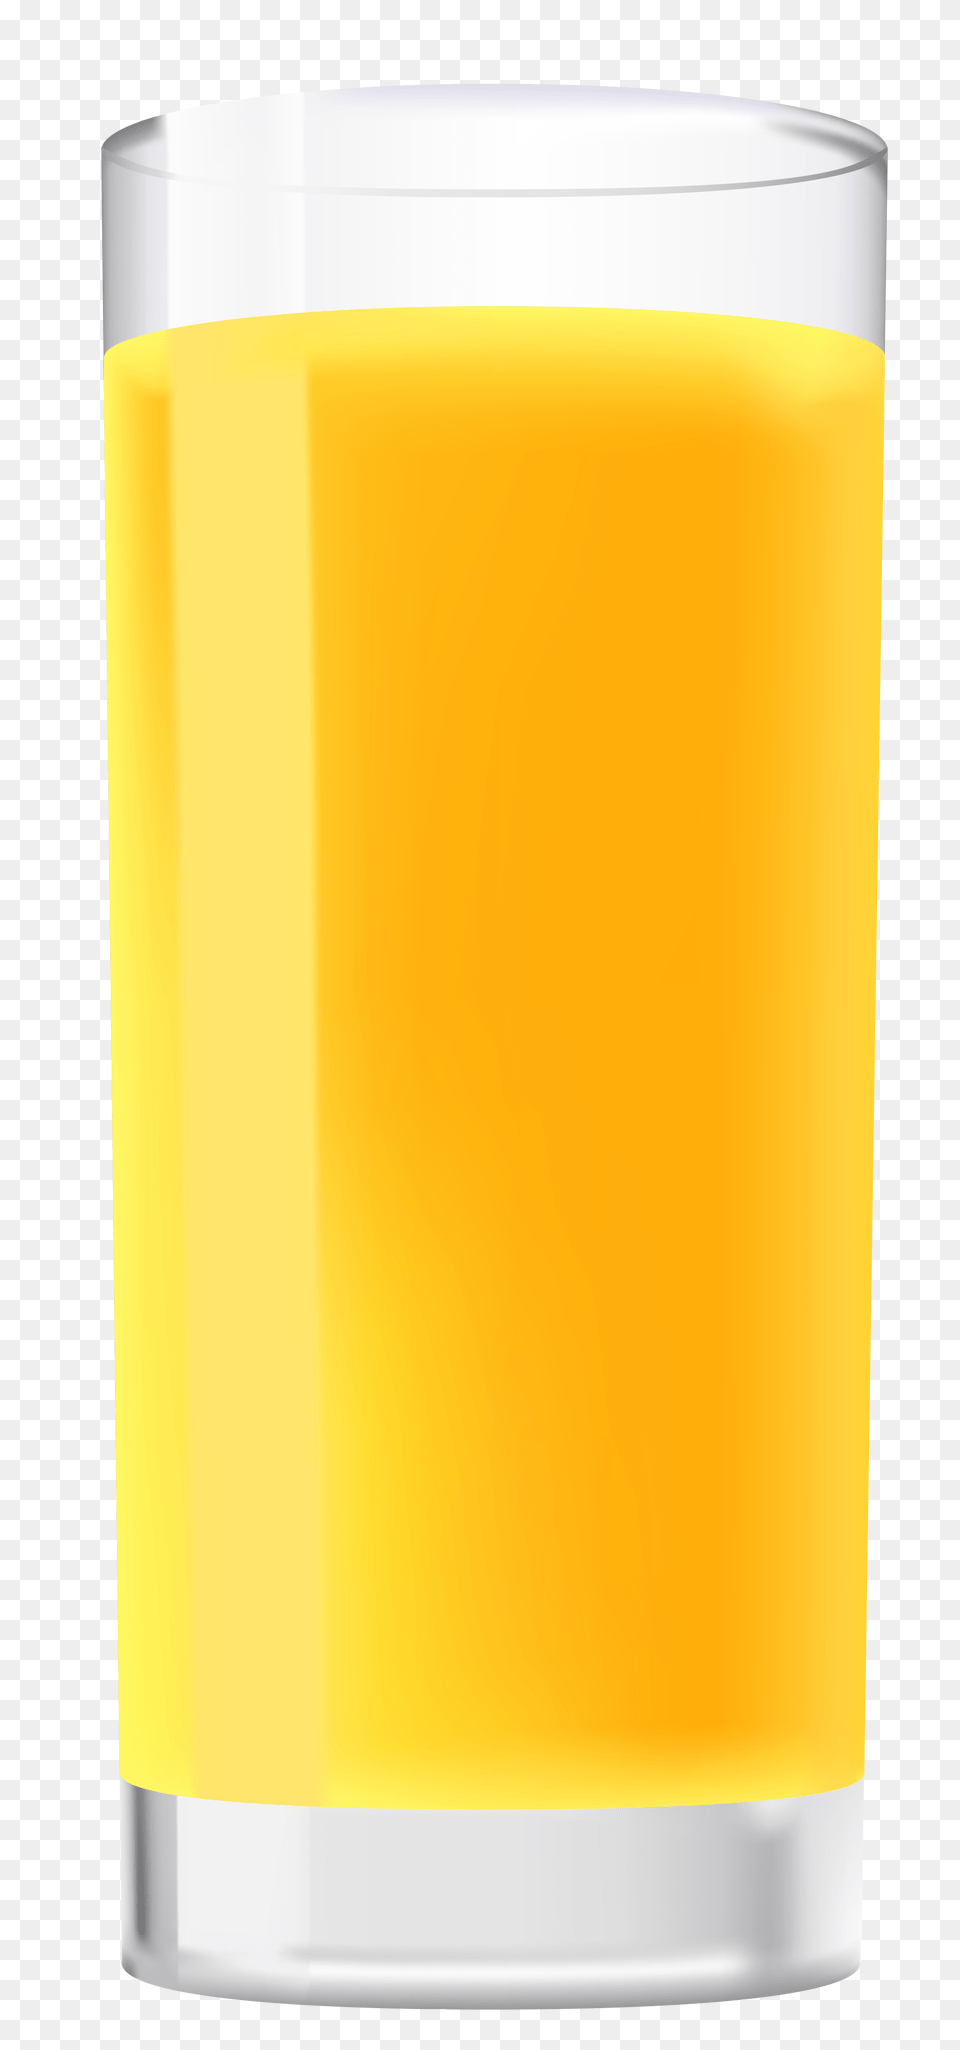 Glass Of Orange Juice Clipart, Beverage, Orange Juice, Bottle, Shaker Png